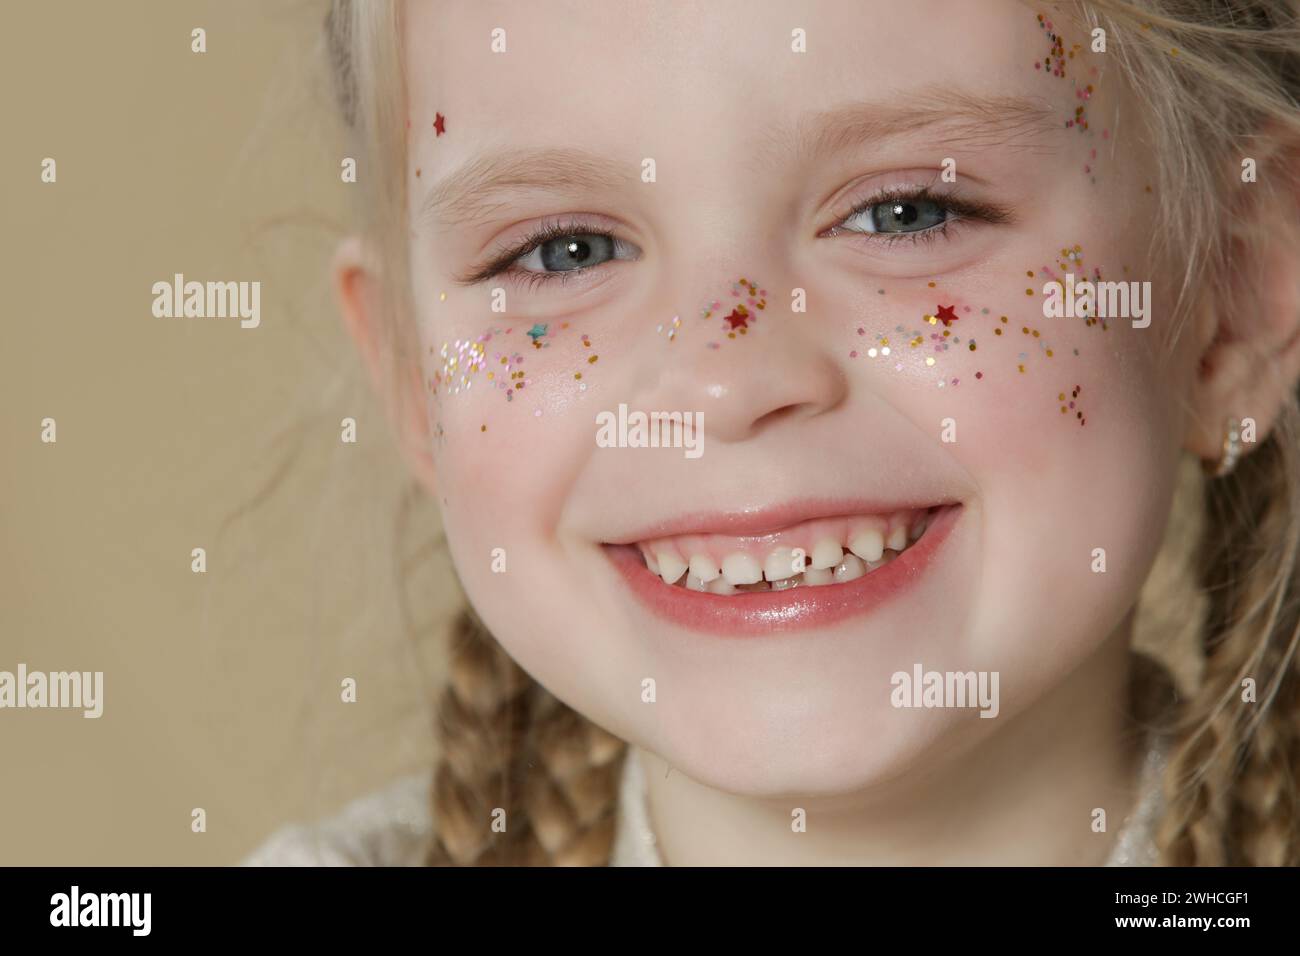 Porträt eines süßen kleinen blonden Mädchens mit blauen Augen und Glitzern im Gesicht. Stockfoto